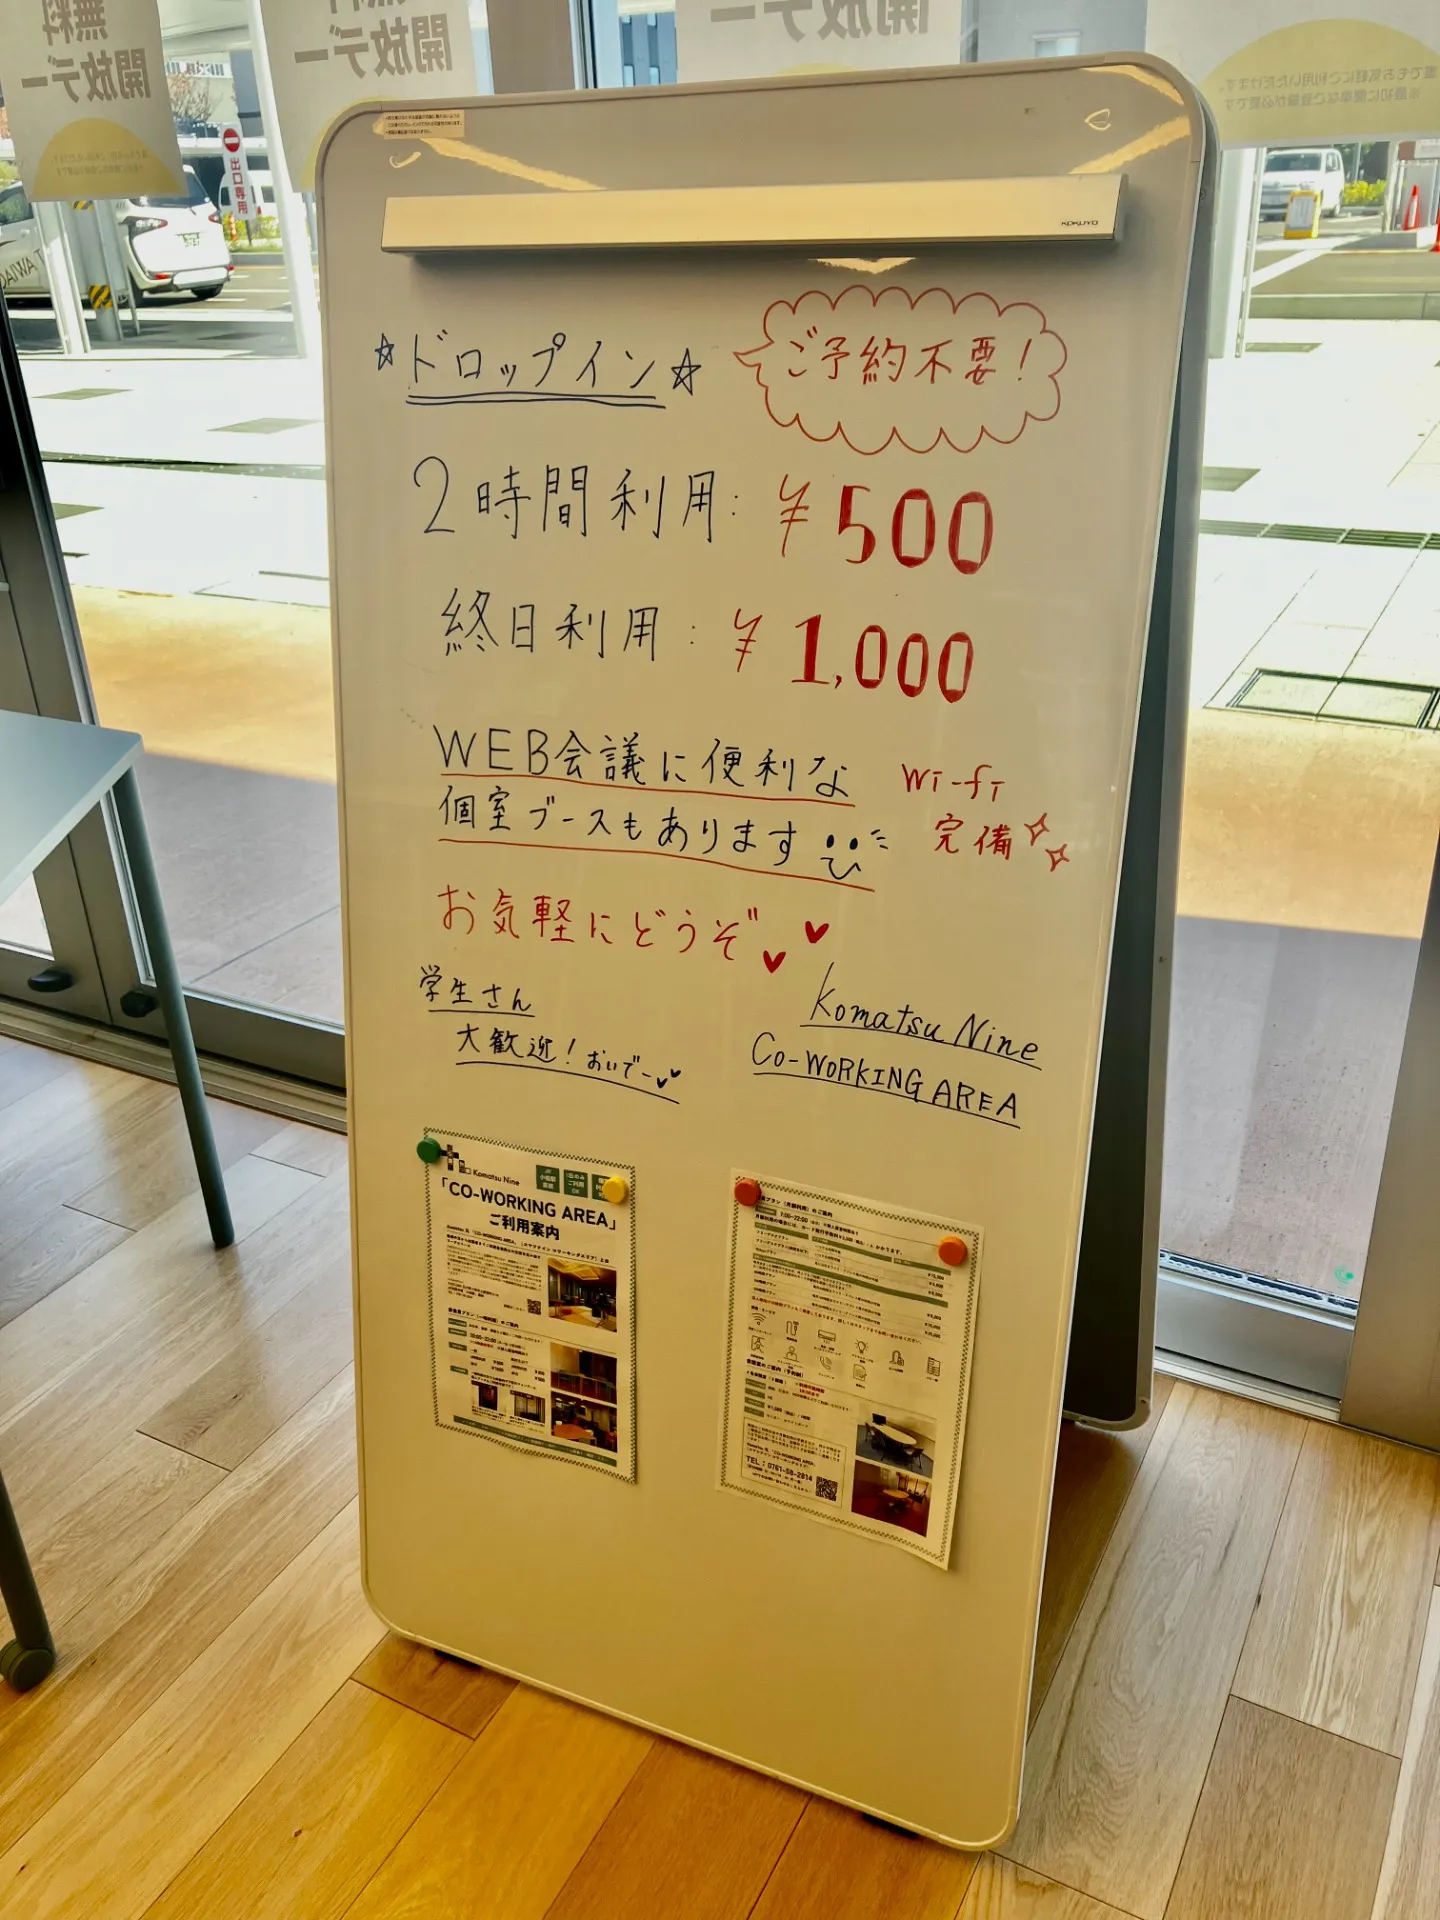 【創業支援】＠小松市　Komatsu Nine「CO-WORKING AREA」に税理士います。